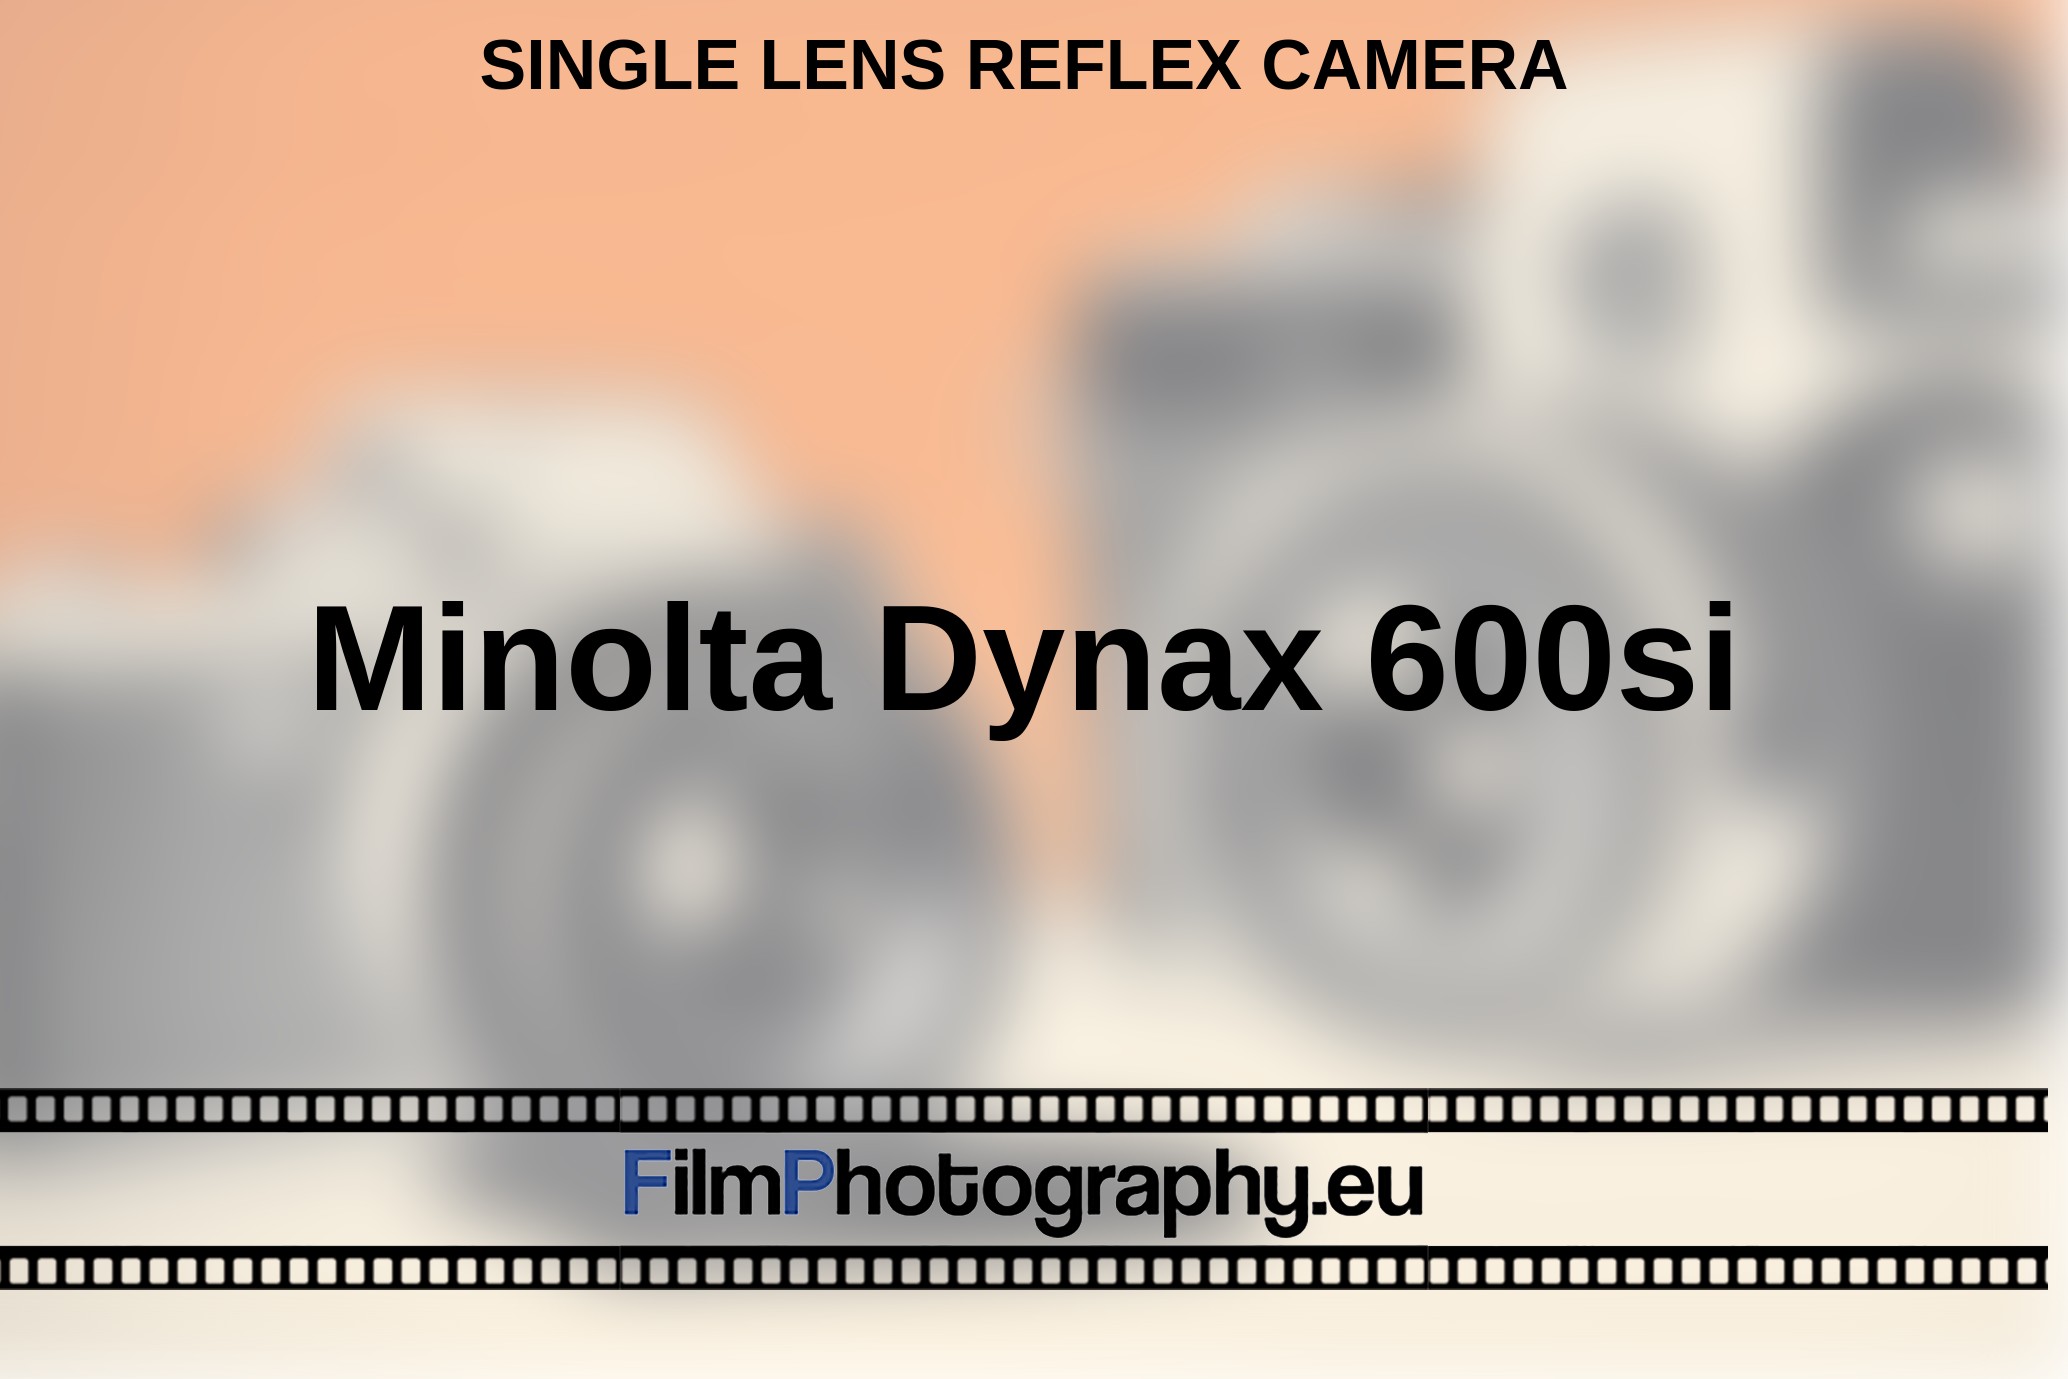 Minolta-Dynax-600si-single-lens-reflex-camera-bnv.jpg